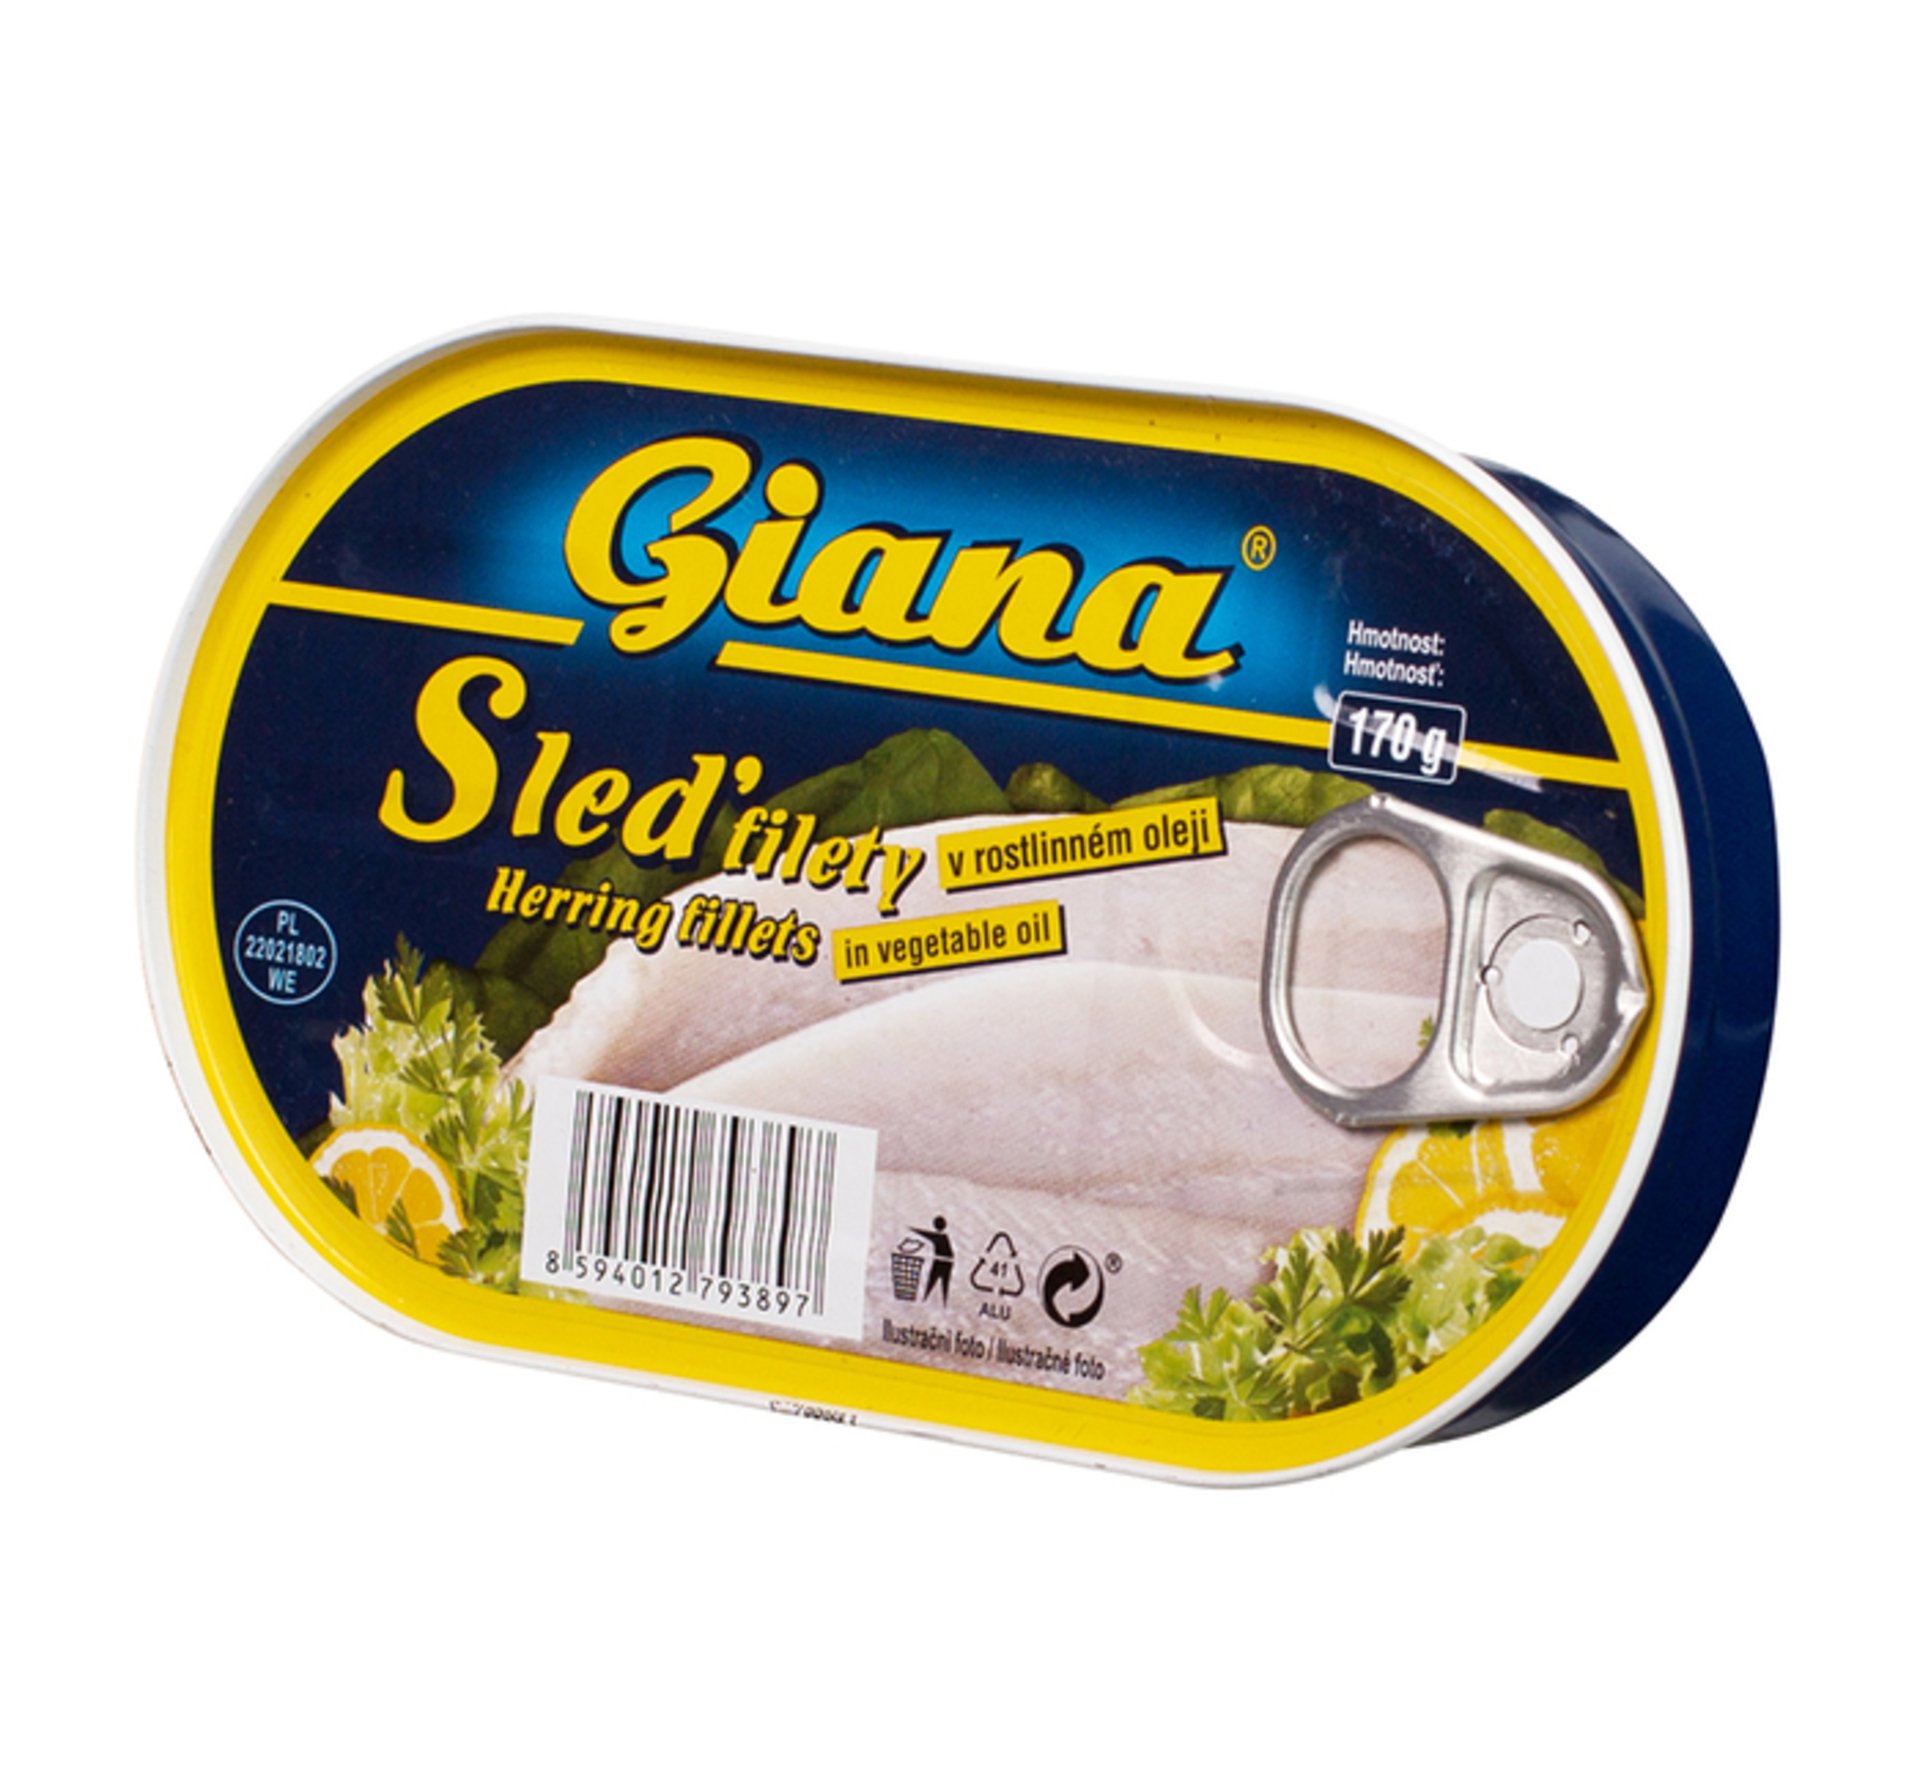 E-shop Giana Sleď filety v rastlinnom oleji 170 g